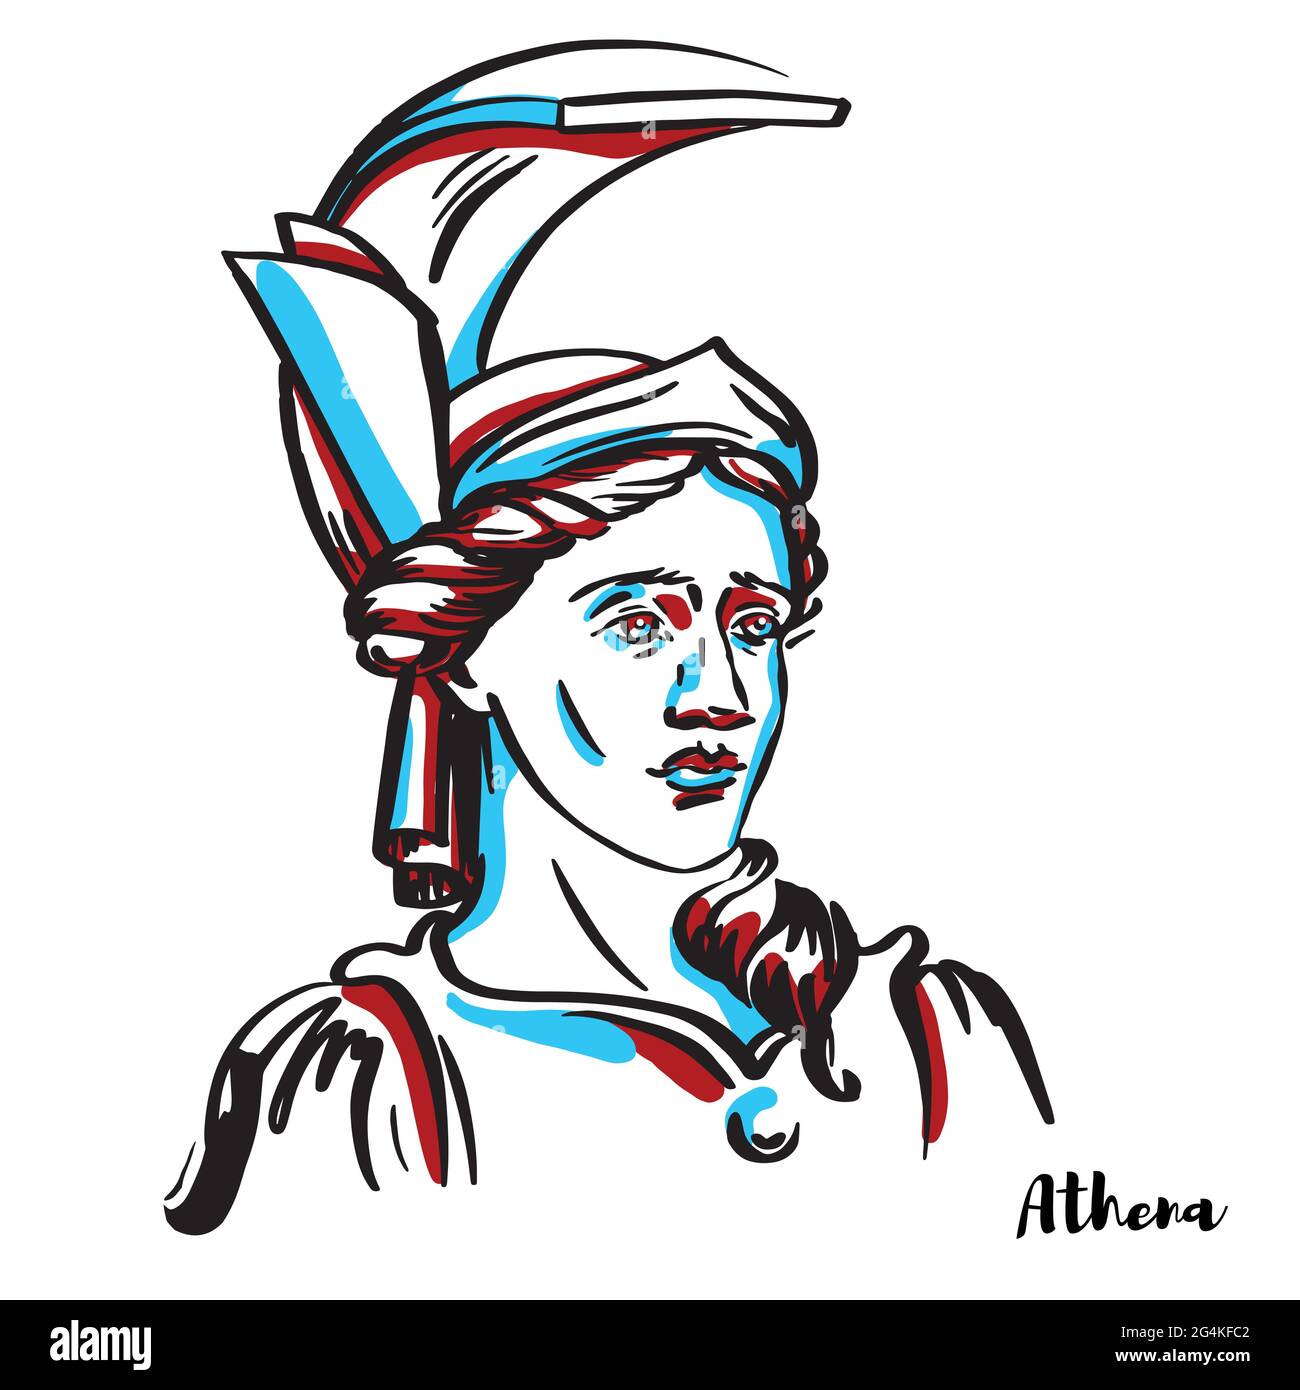 Portrait vectoriel gravé Athena avec contours encreurs sur fond blanc. Est une ancienne déesse grecque associée à la sagesse, l'artisanat, et la guerre qui Illustration de Vecteur